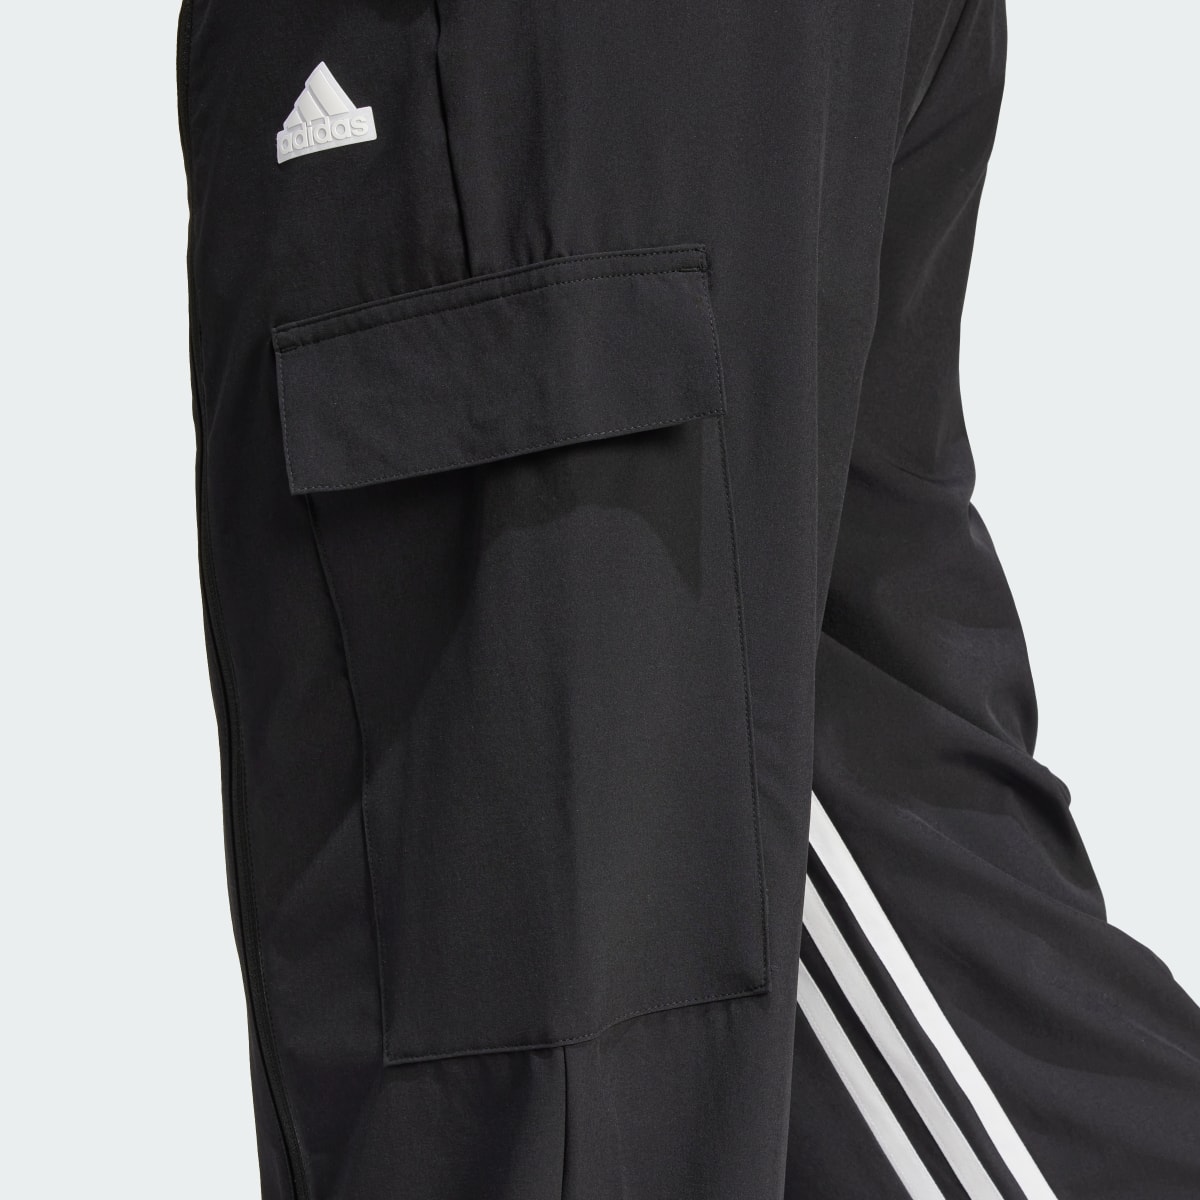 Adidas Dance All-Gender Versatile Woven Cargohose. 5